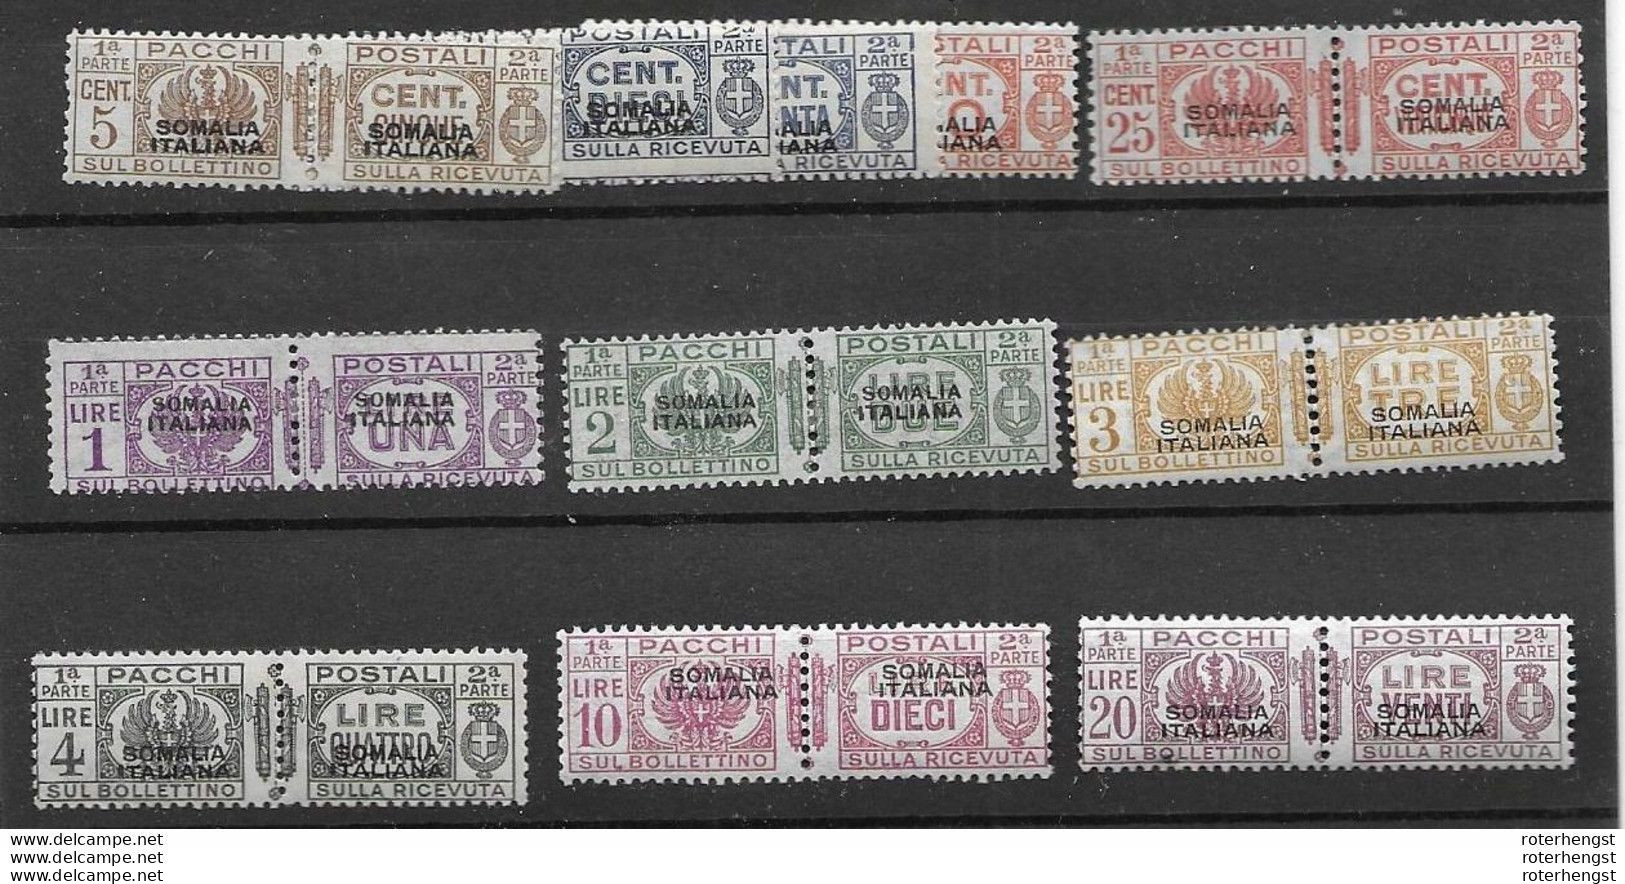 RR Somalia Italiana Mnh** 2090 + Euros 1928 (11 Pairs) - Somalie